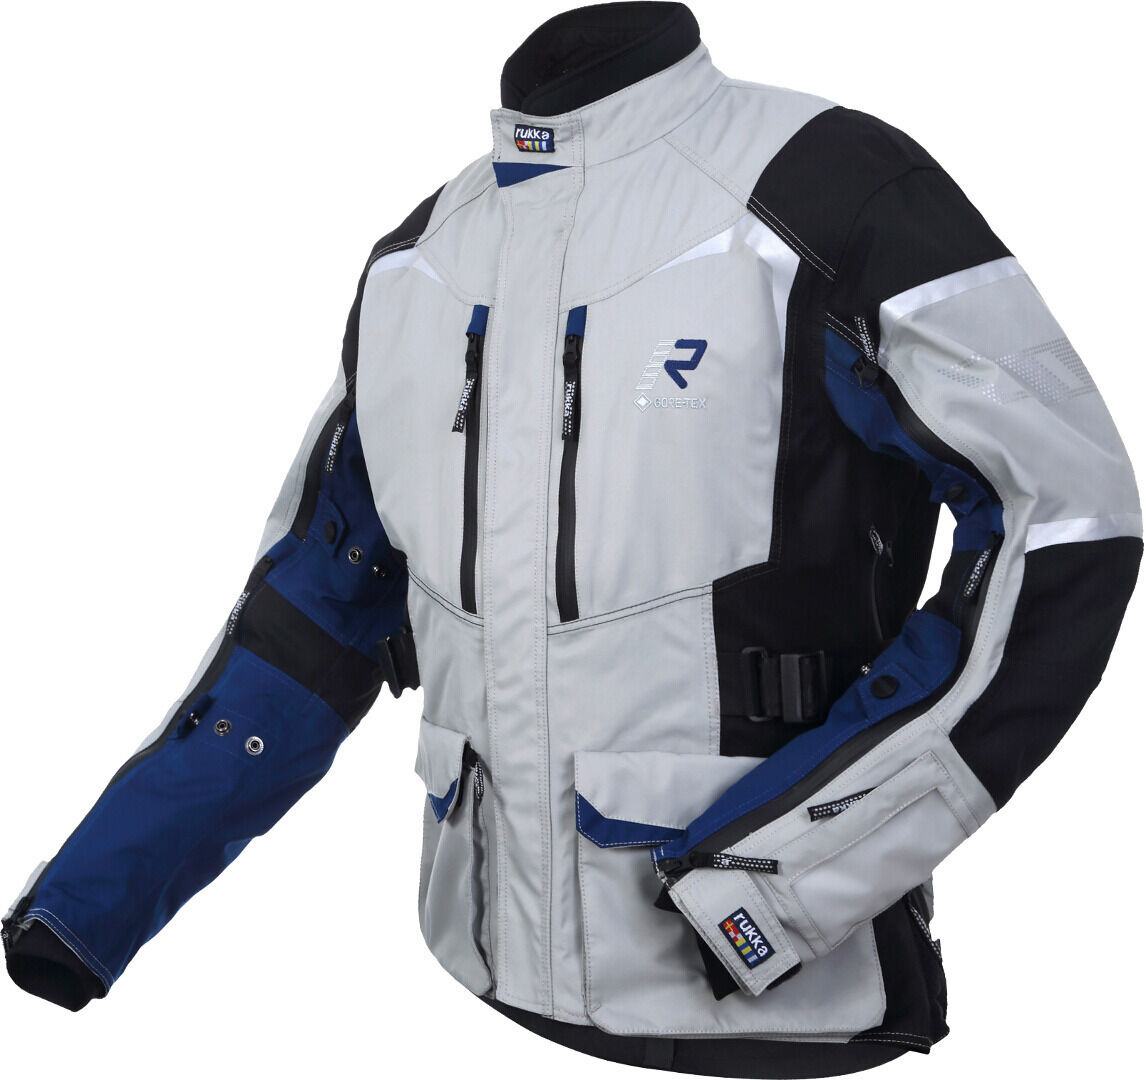 Photos - Motorcycle Clothing Rukka Rimo-R Motorcycle Textile Jacket Unisex Grey Blue Size: 46 702307473 